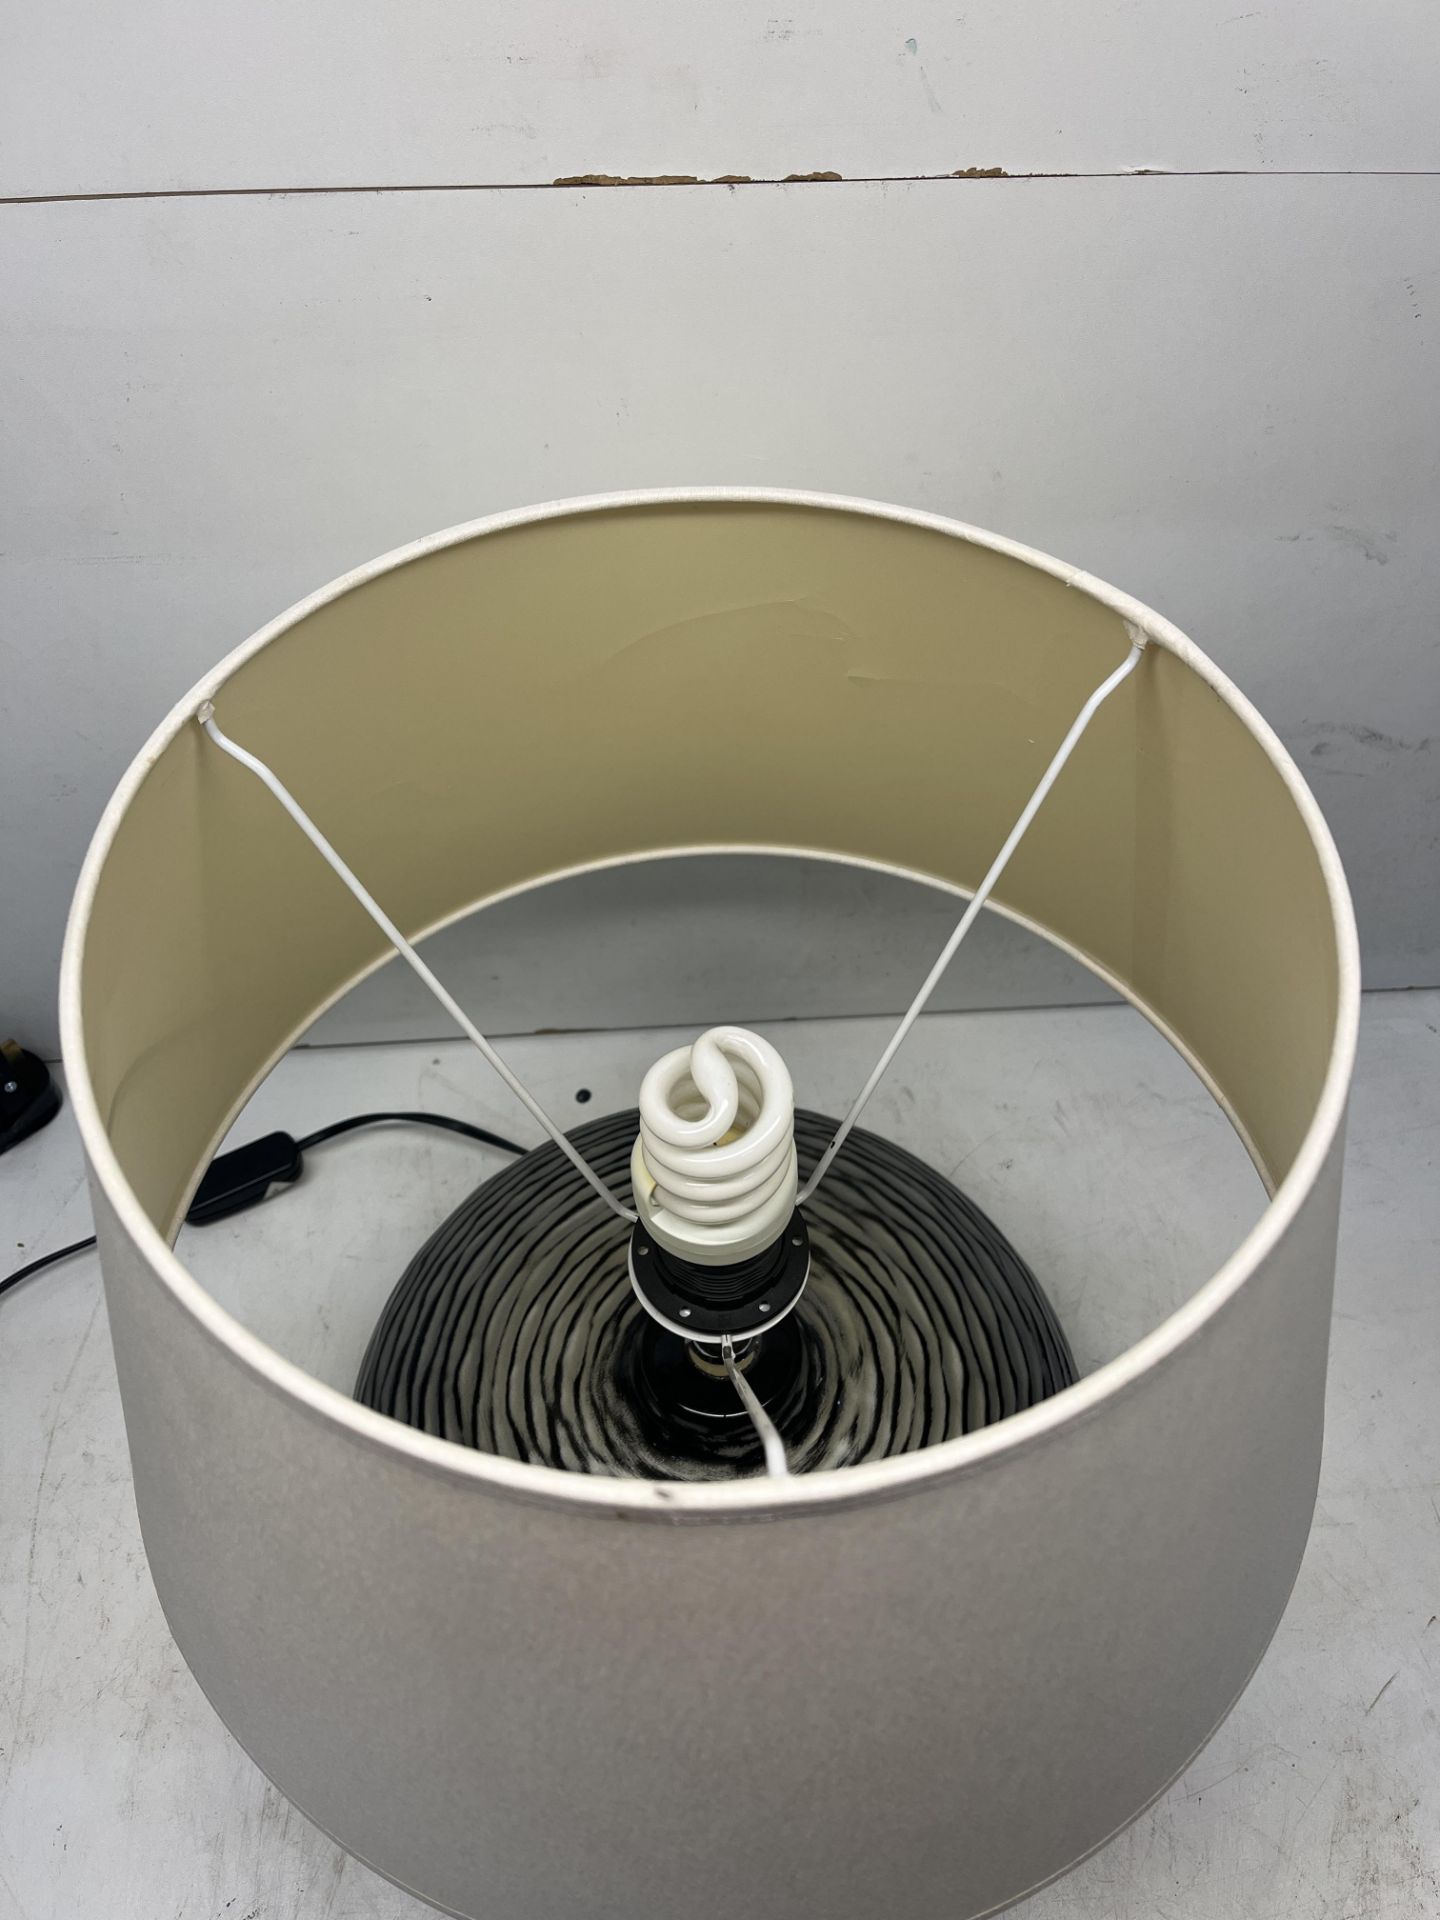 Circular Ceramic Table Lamp - Image 3 of 4